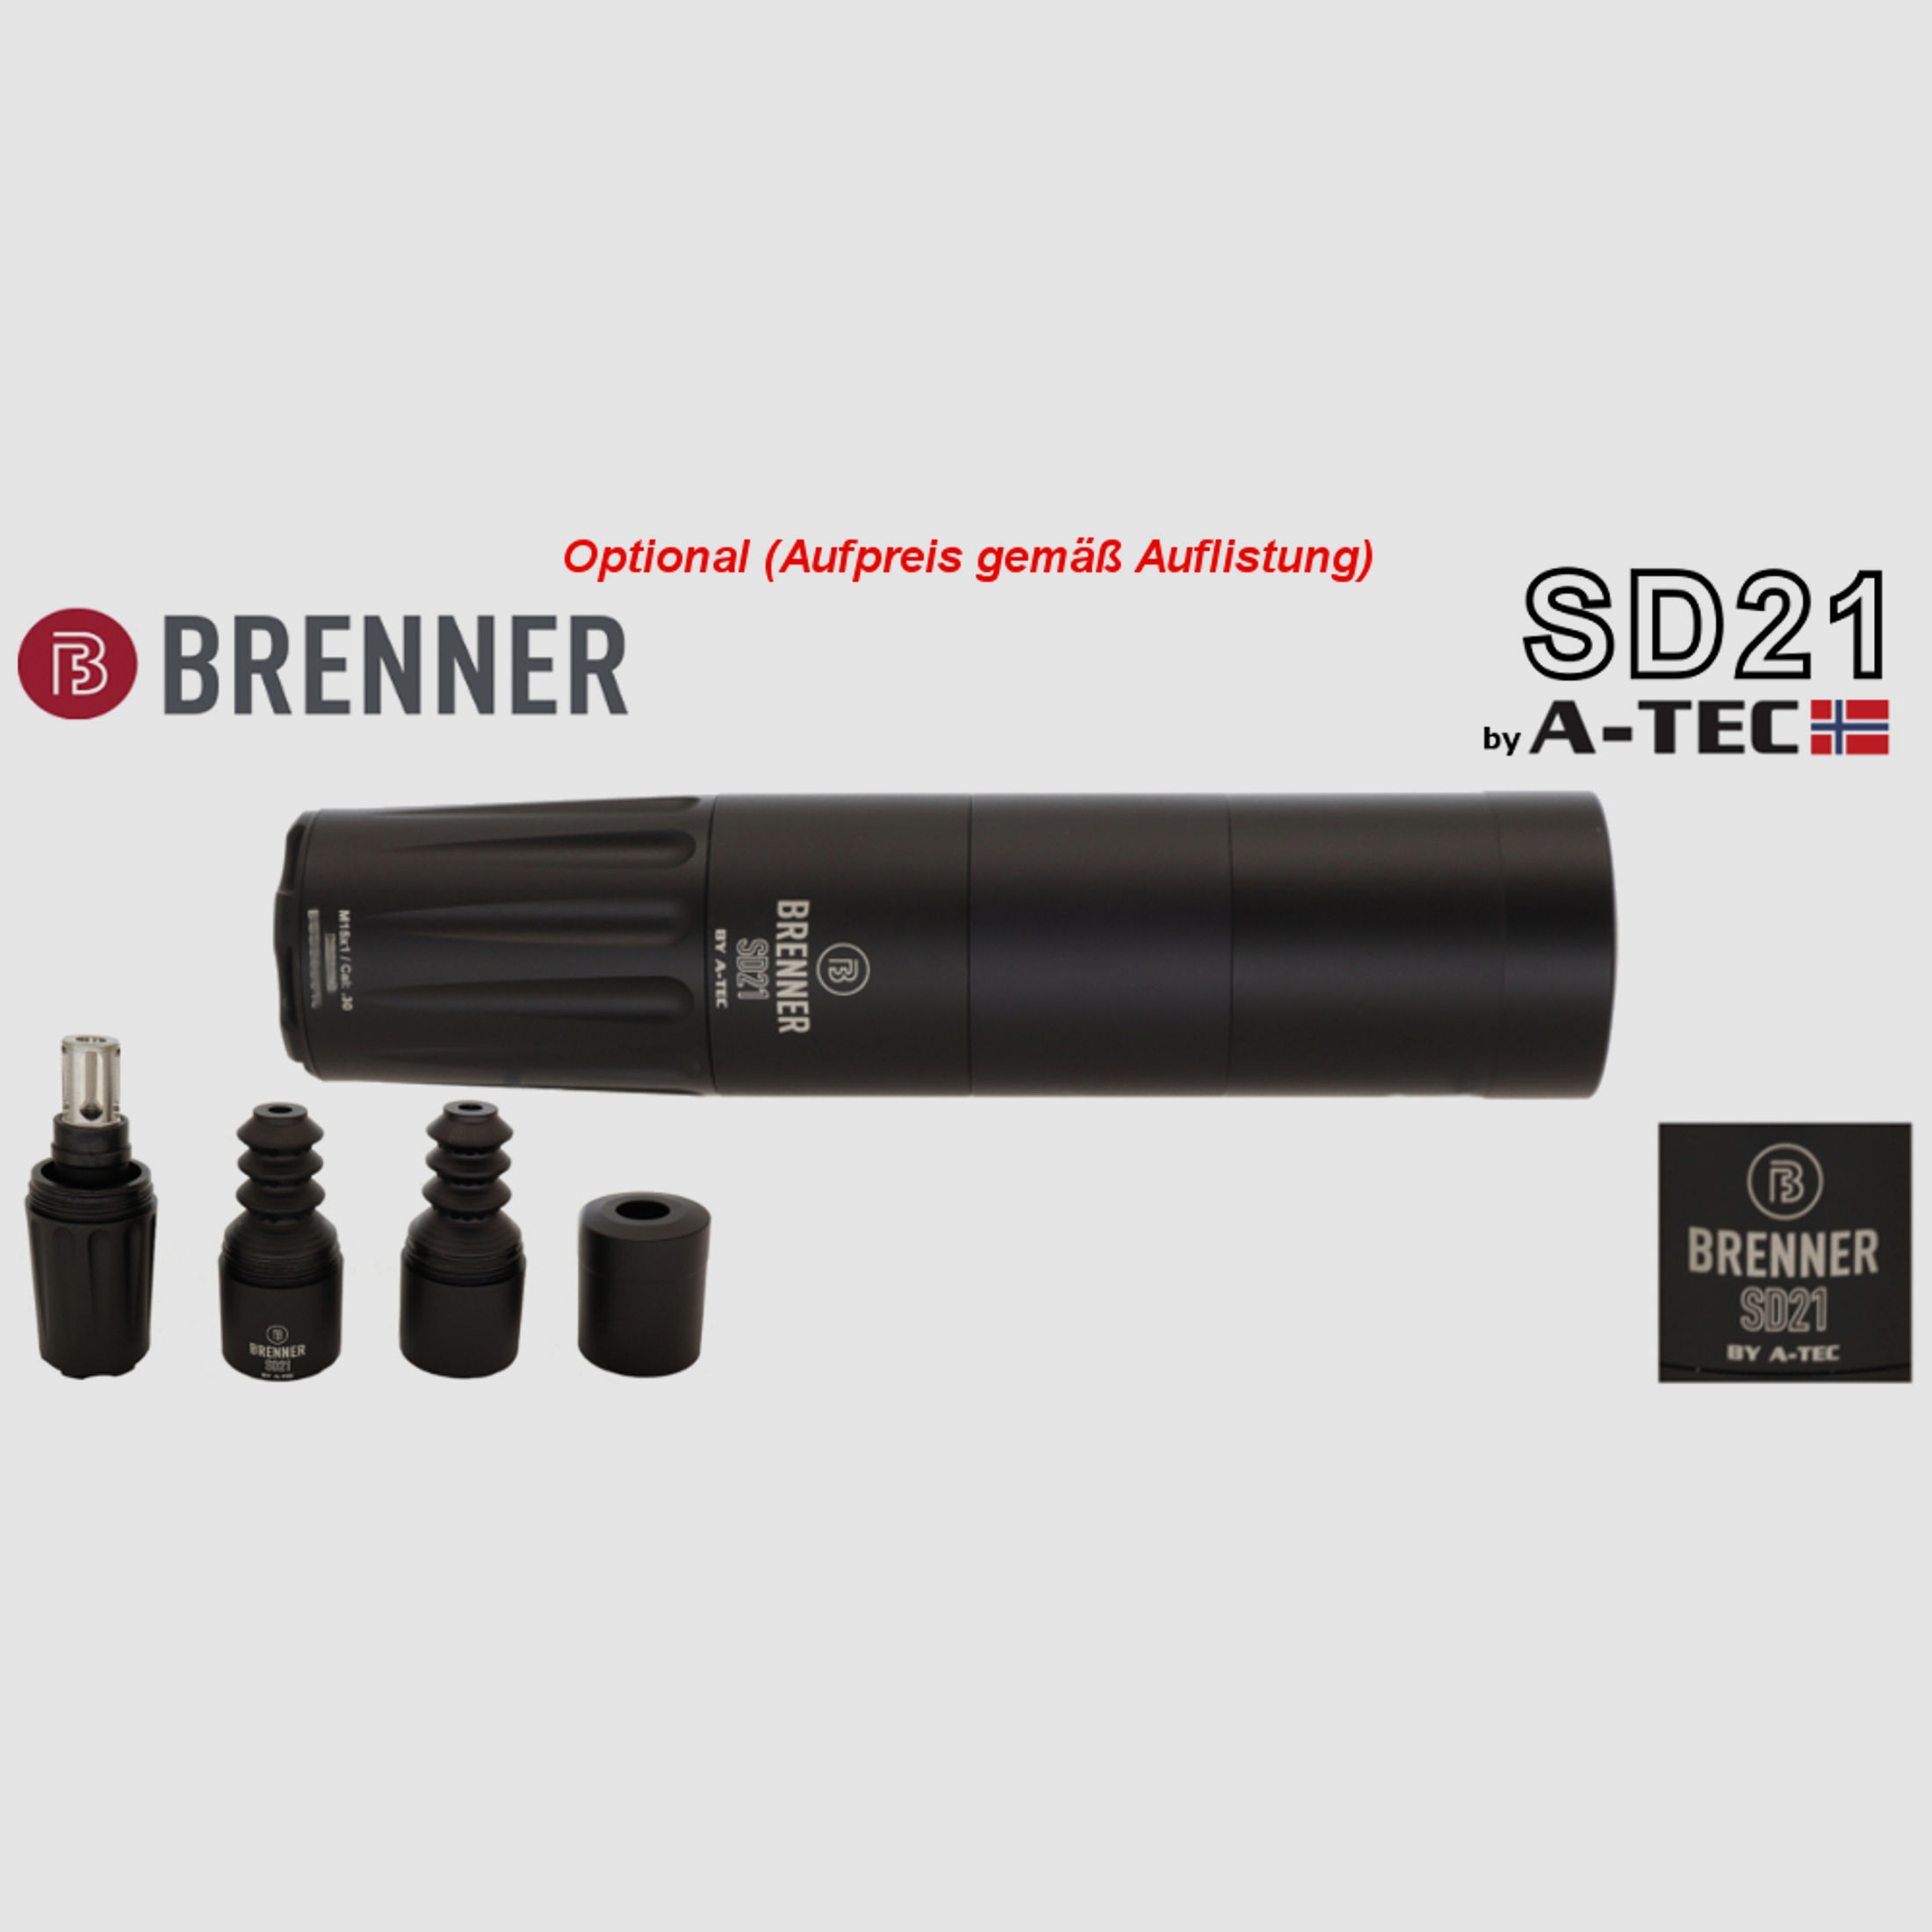 Auf Lager, Komplettset: Brenner BR20 Kunststoff- Schaft mit ZF Bushnell Nitro 2.5-15x50 (Parallaxe Verstellung)  (Best.Nr.: BR20PP7) Finanzierung möglich